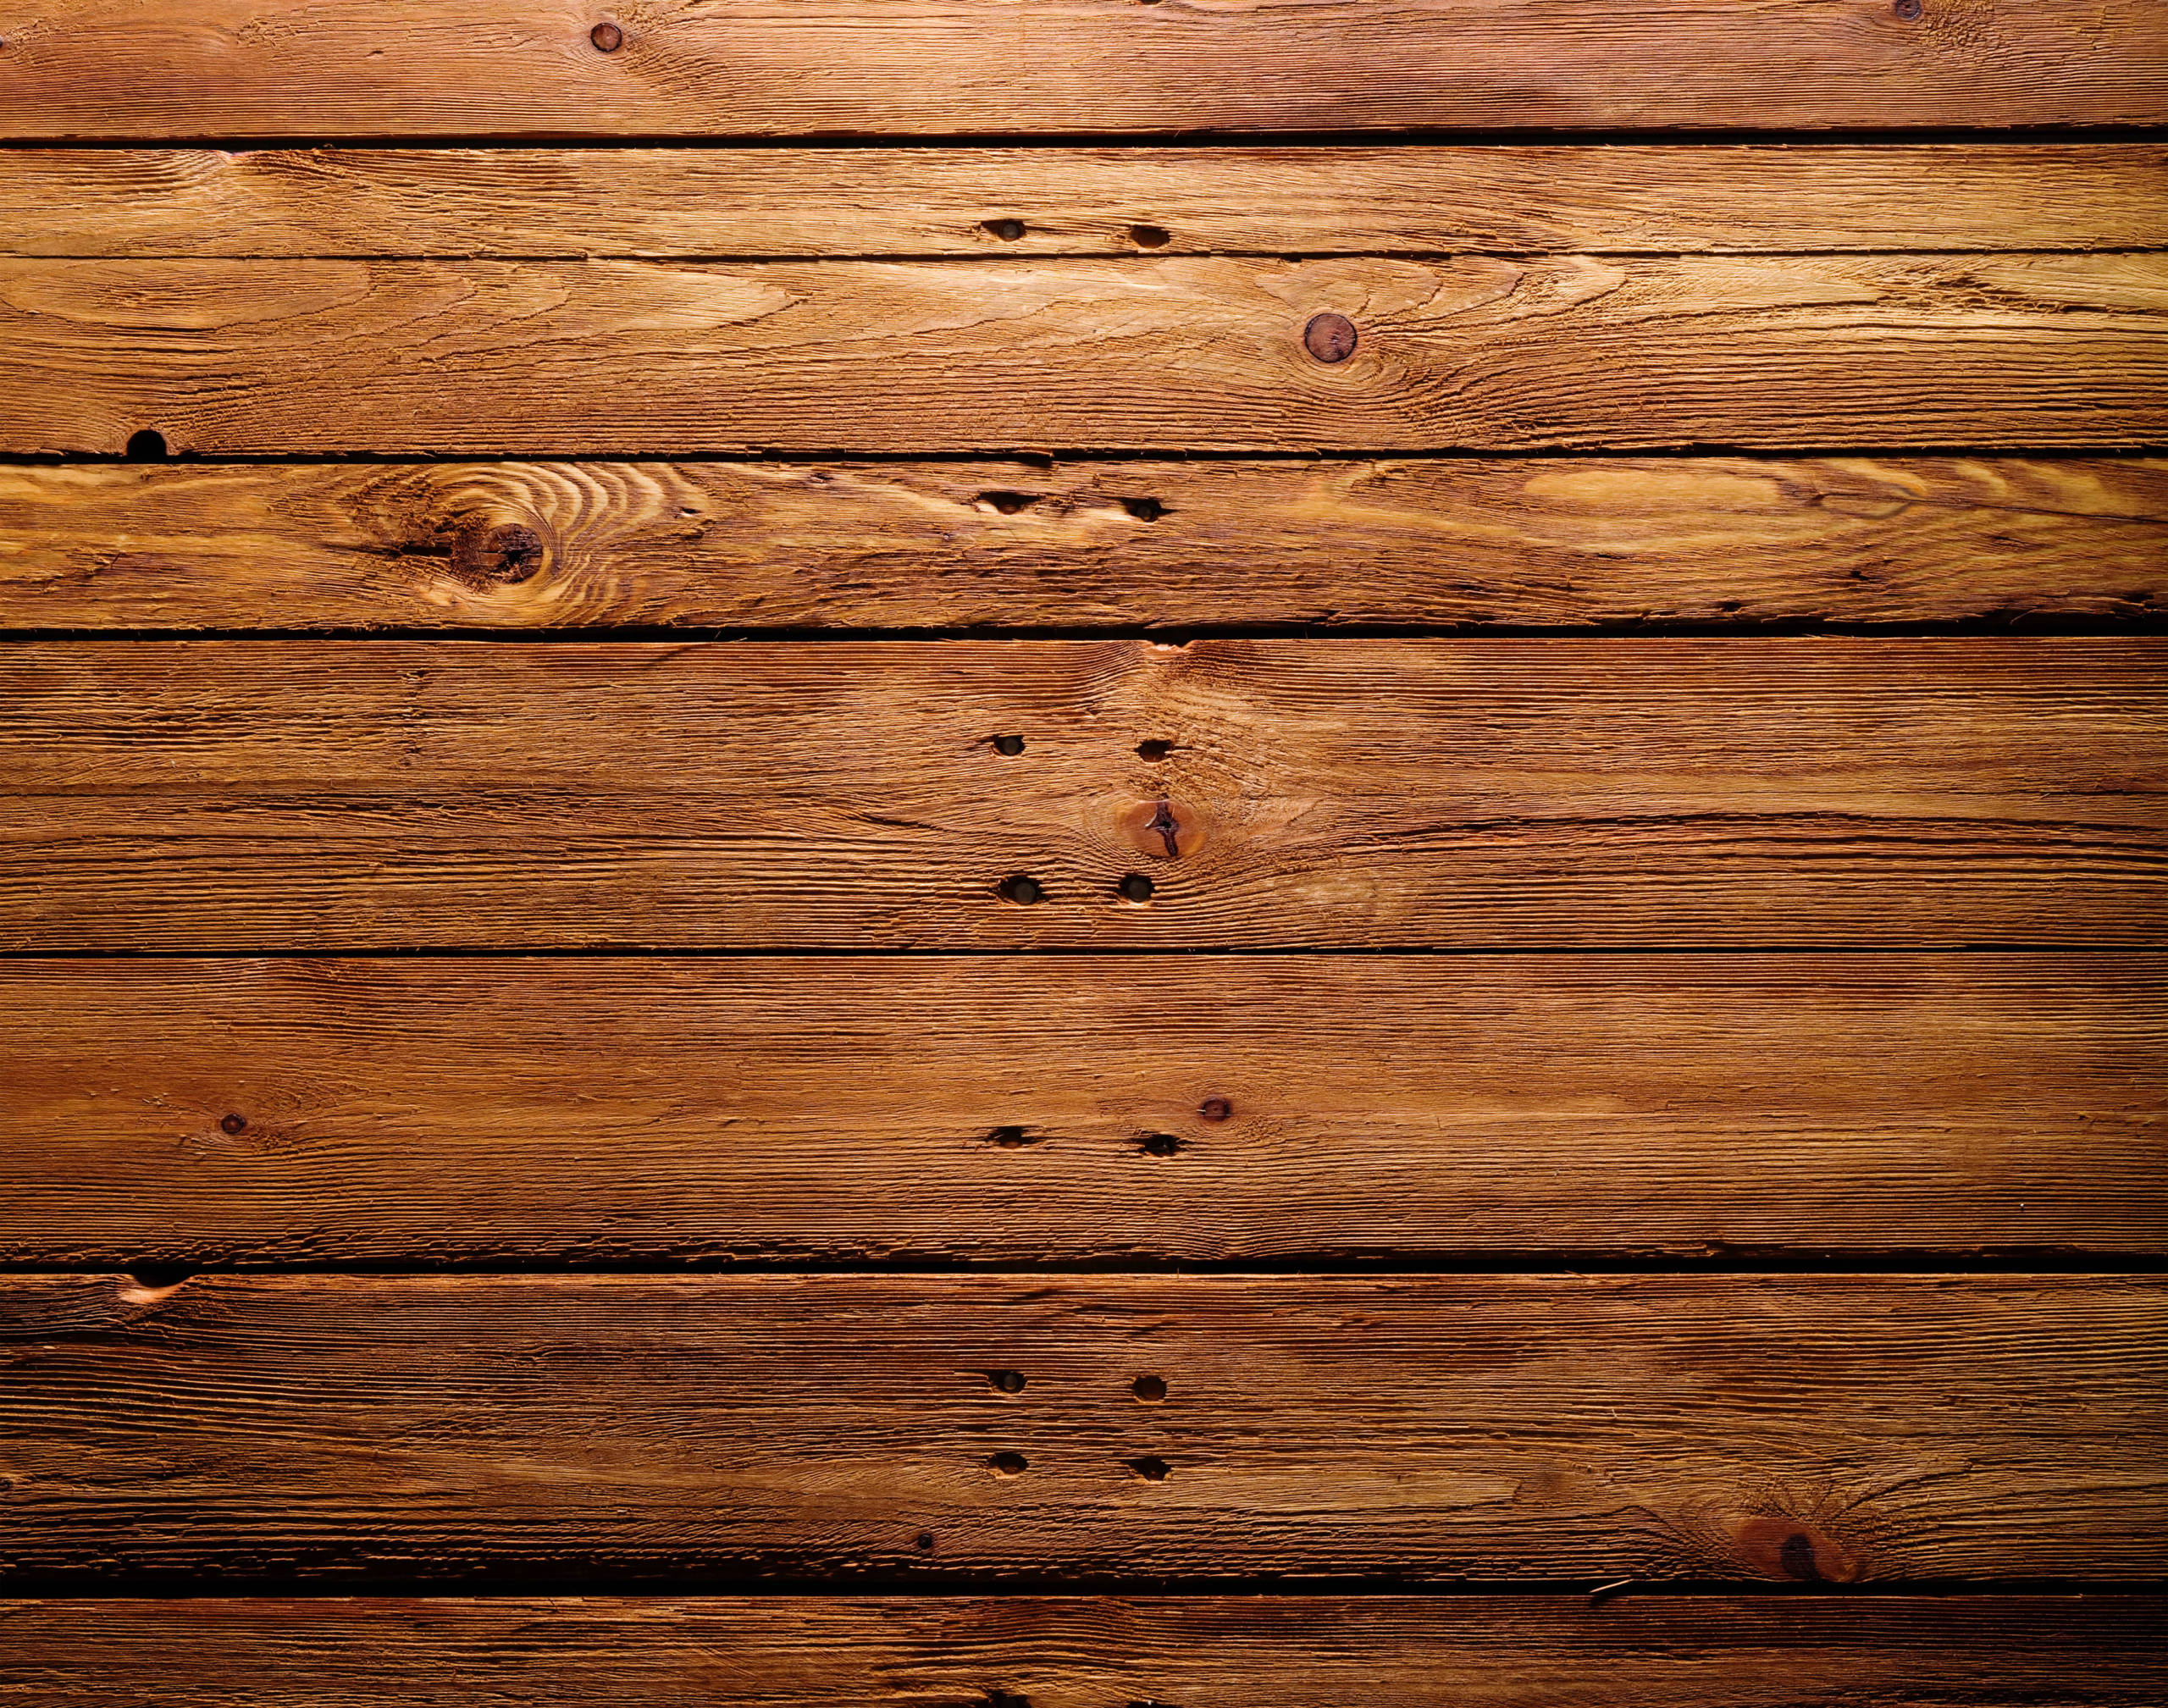 Texture nền gỗ - Việc sử dụng texture nền gỗ sẽ làm nổi bật bất kỳ sản phẩm thẩm mỹ nào. Hãy cùng khám phá những mẫu texture nền gỗ tuyệt đẹp trong hình ảnh của chúng tôi.